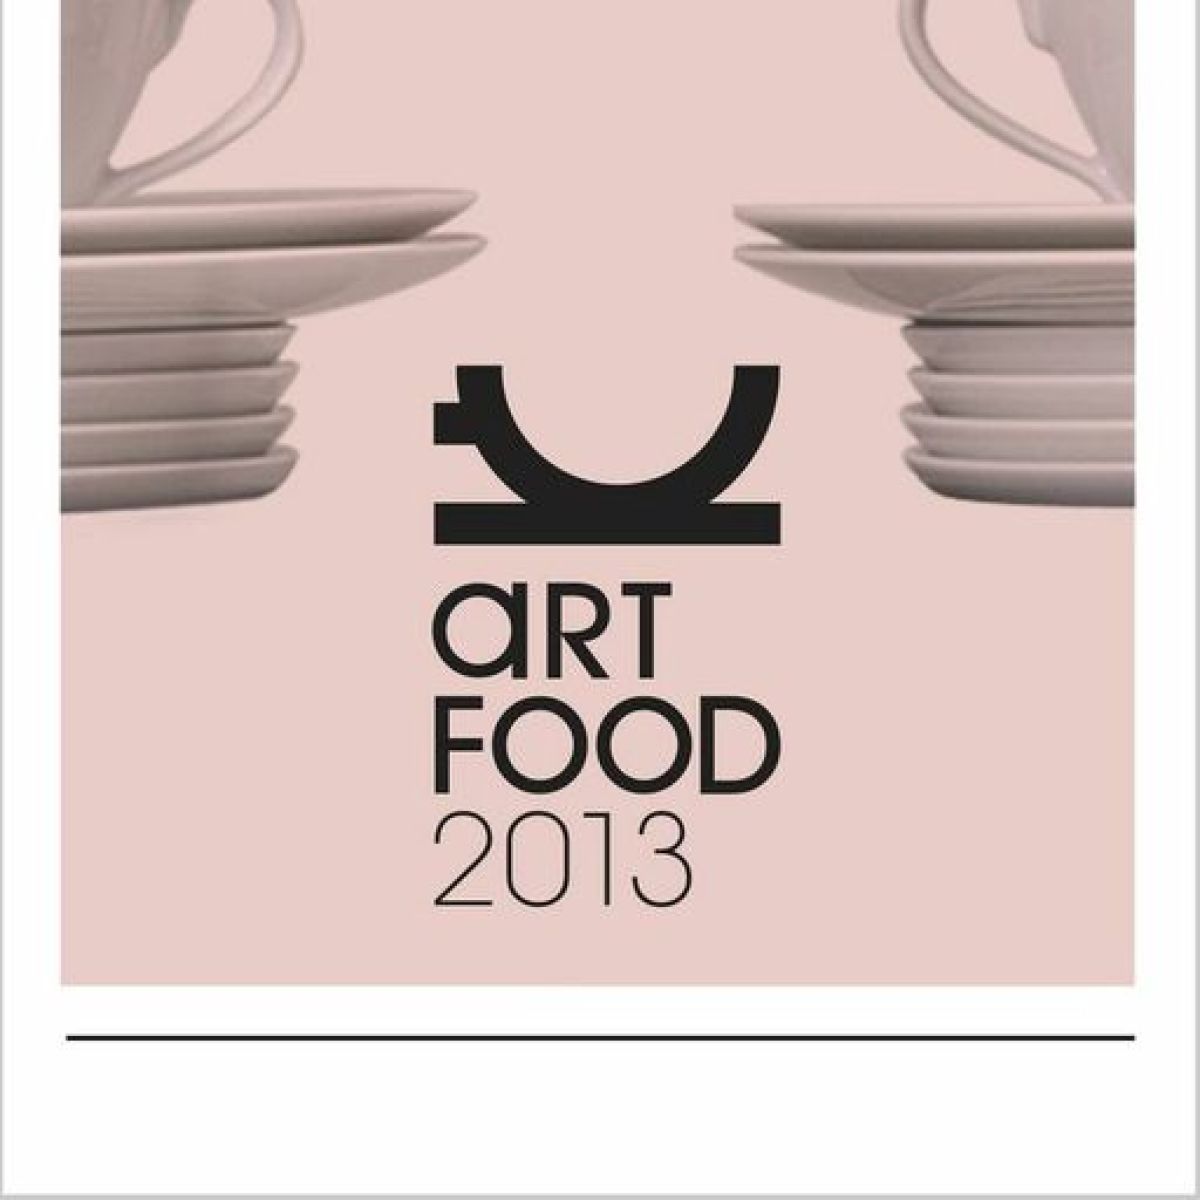 Zapraszamy serdecznie na wernisaż wystawy kończącej projekt Art Food w Concordia Design!